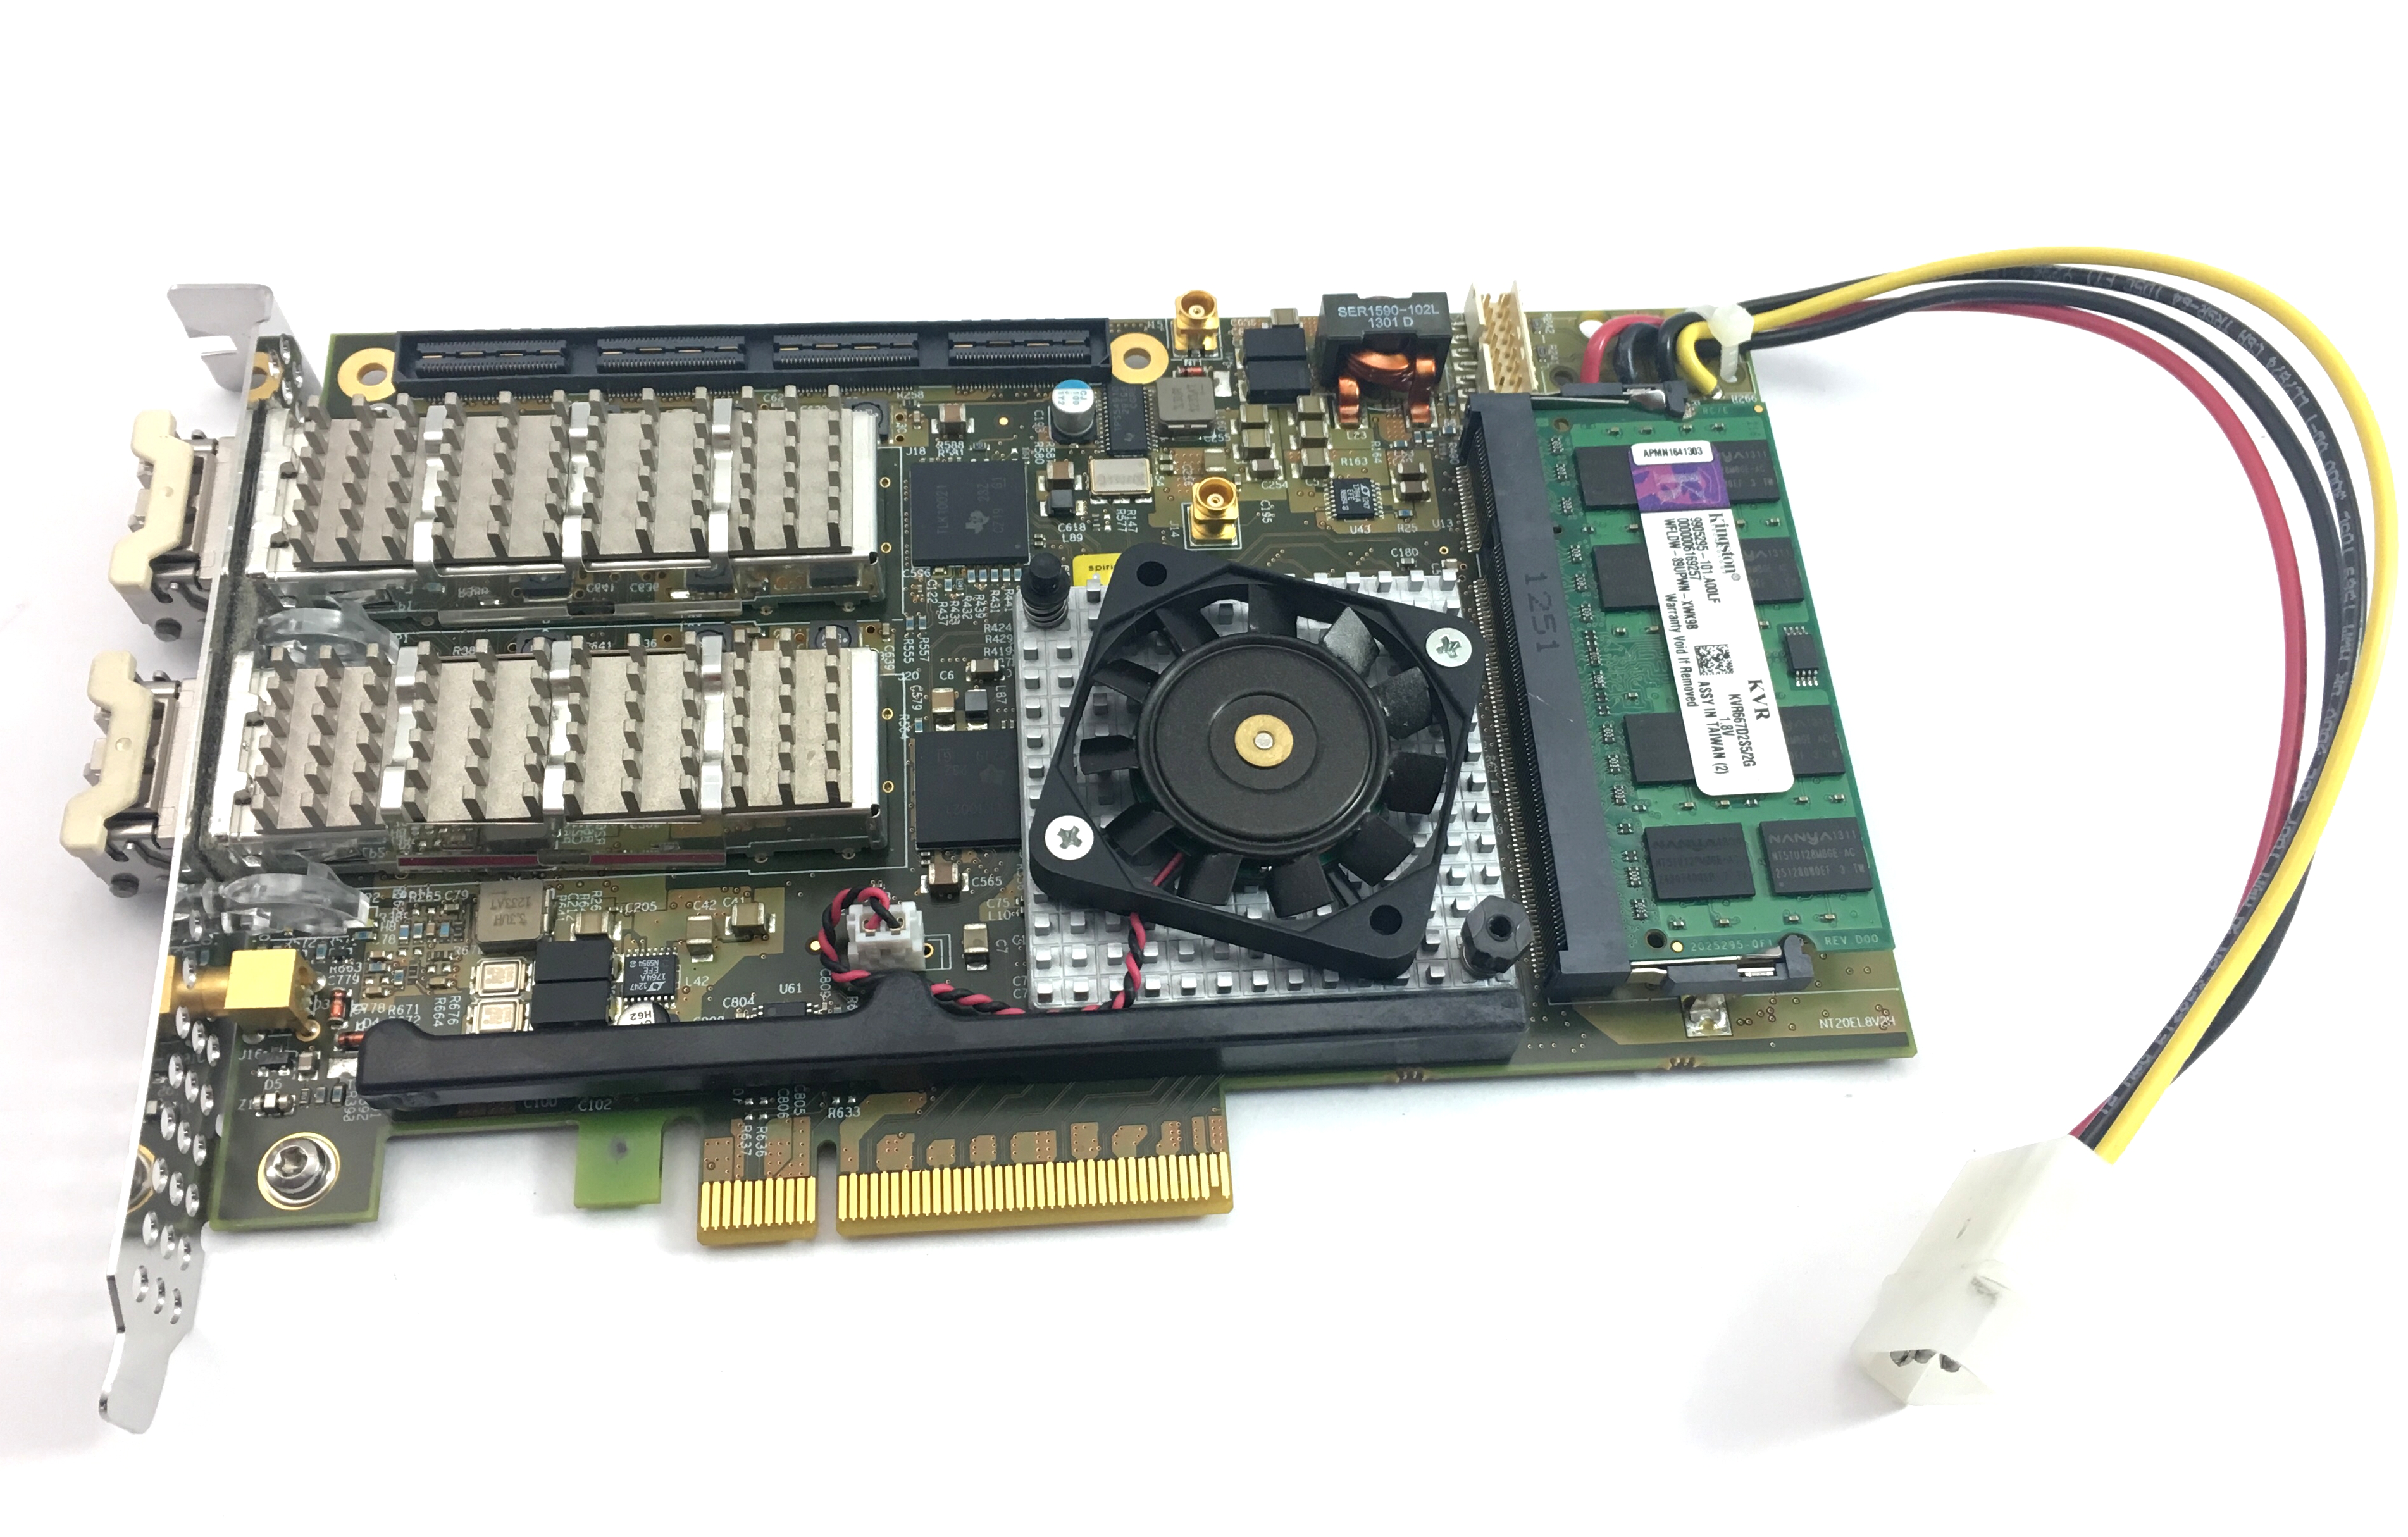 NAPATECH NT20E 2-PORT 10GB PCI-E 2GB NETWORK INTERFACE CARD (810-0023-01-05)